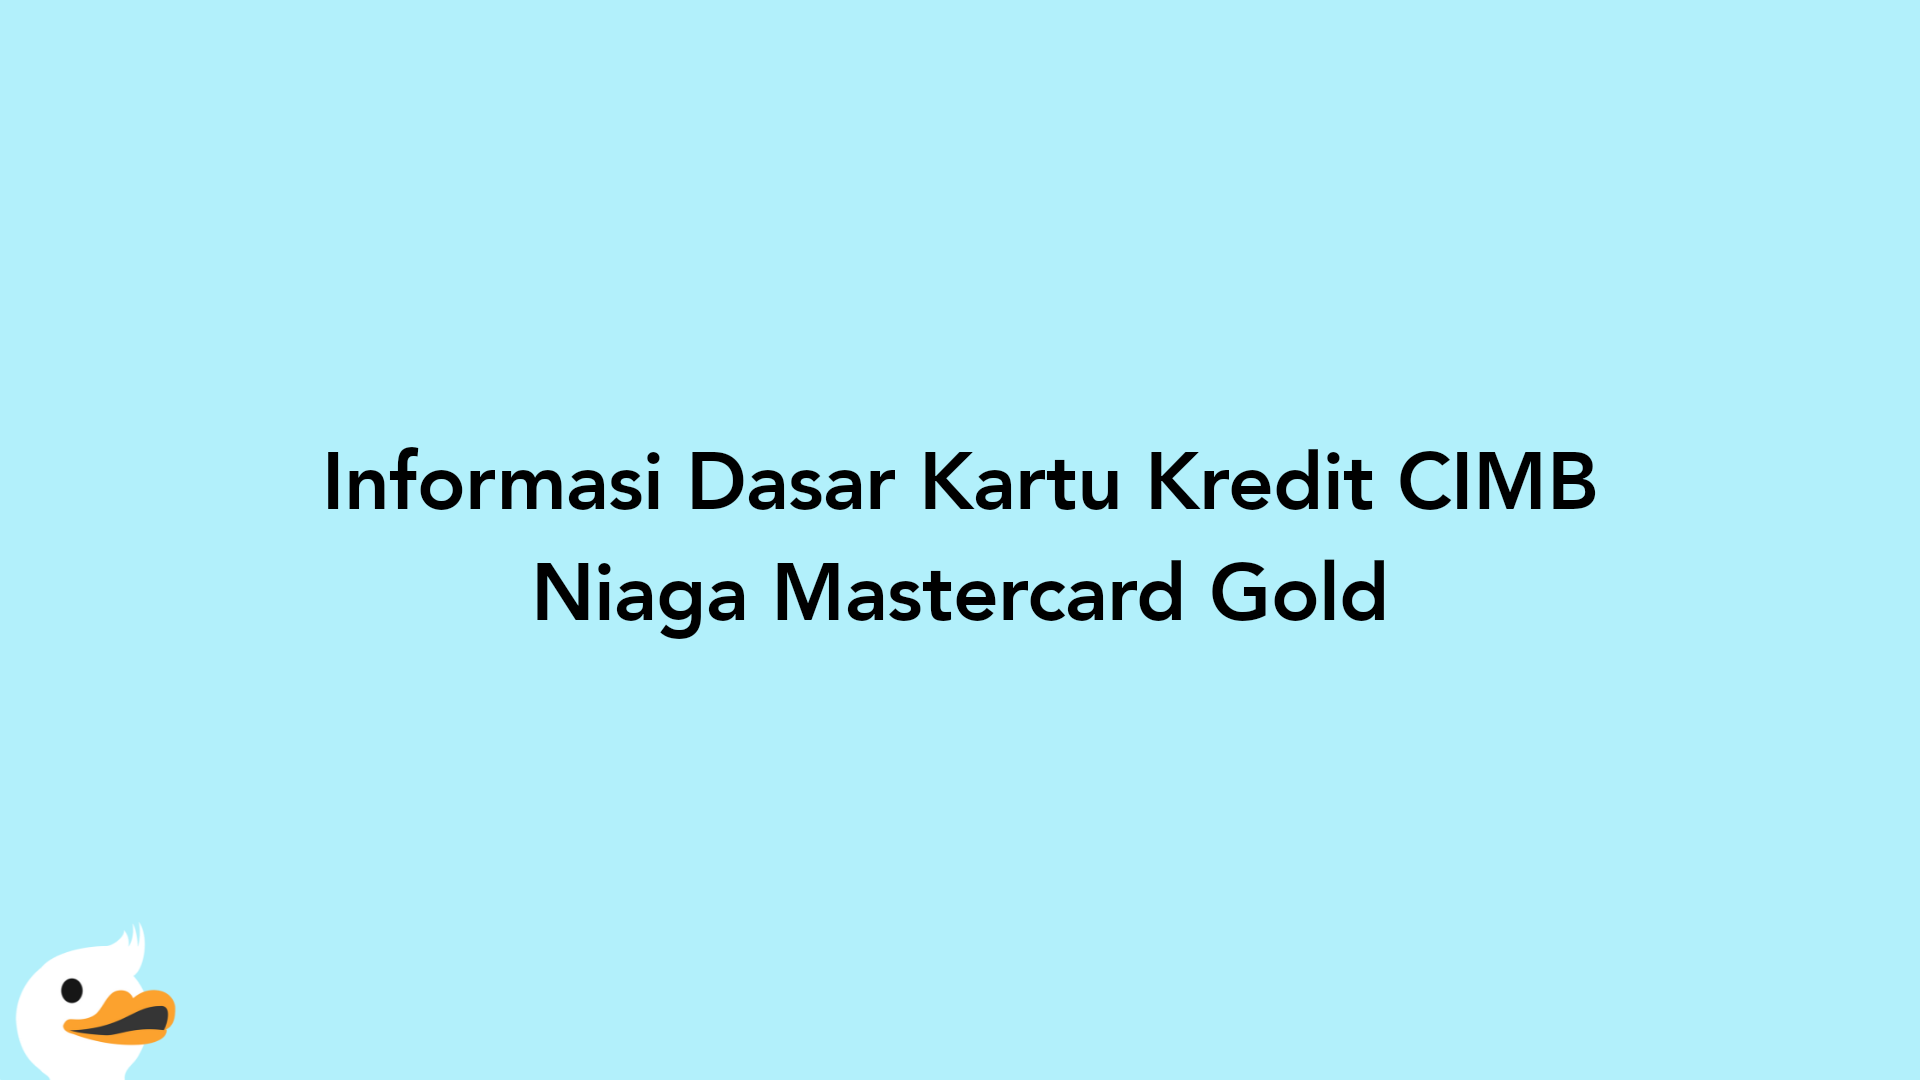 Informasi Dasar Kartu Kredit CIMB Niaga Mastercard Gold